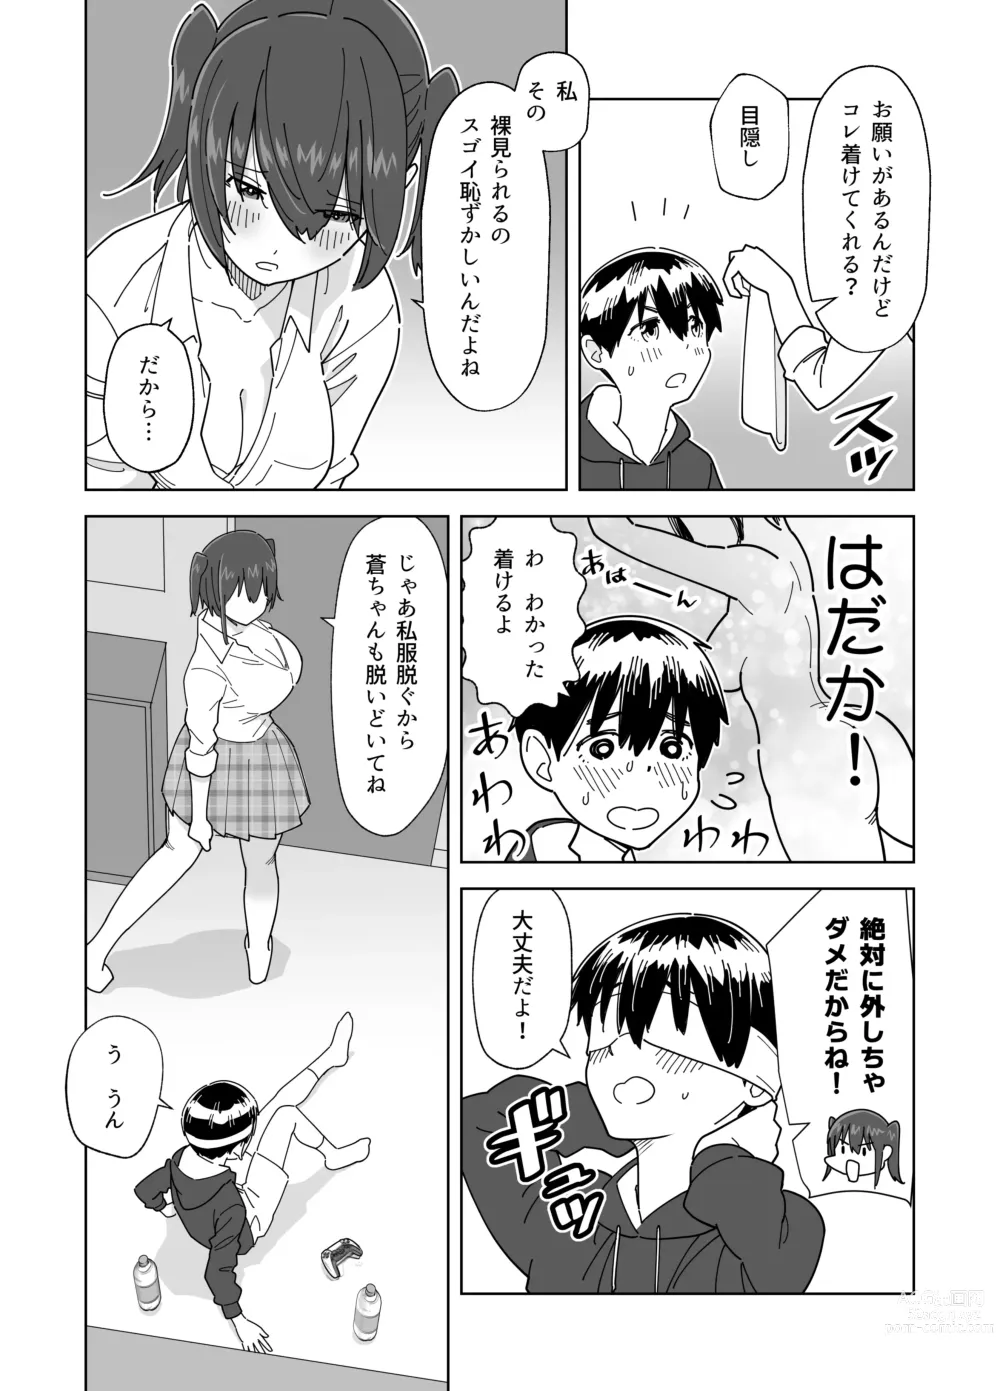 Page 7 of doujinshi Mekakushi Kossori Irekawatte Otouto to Yatte Mita